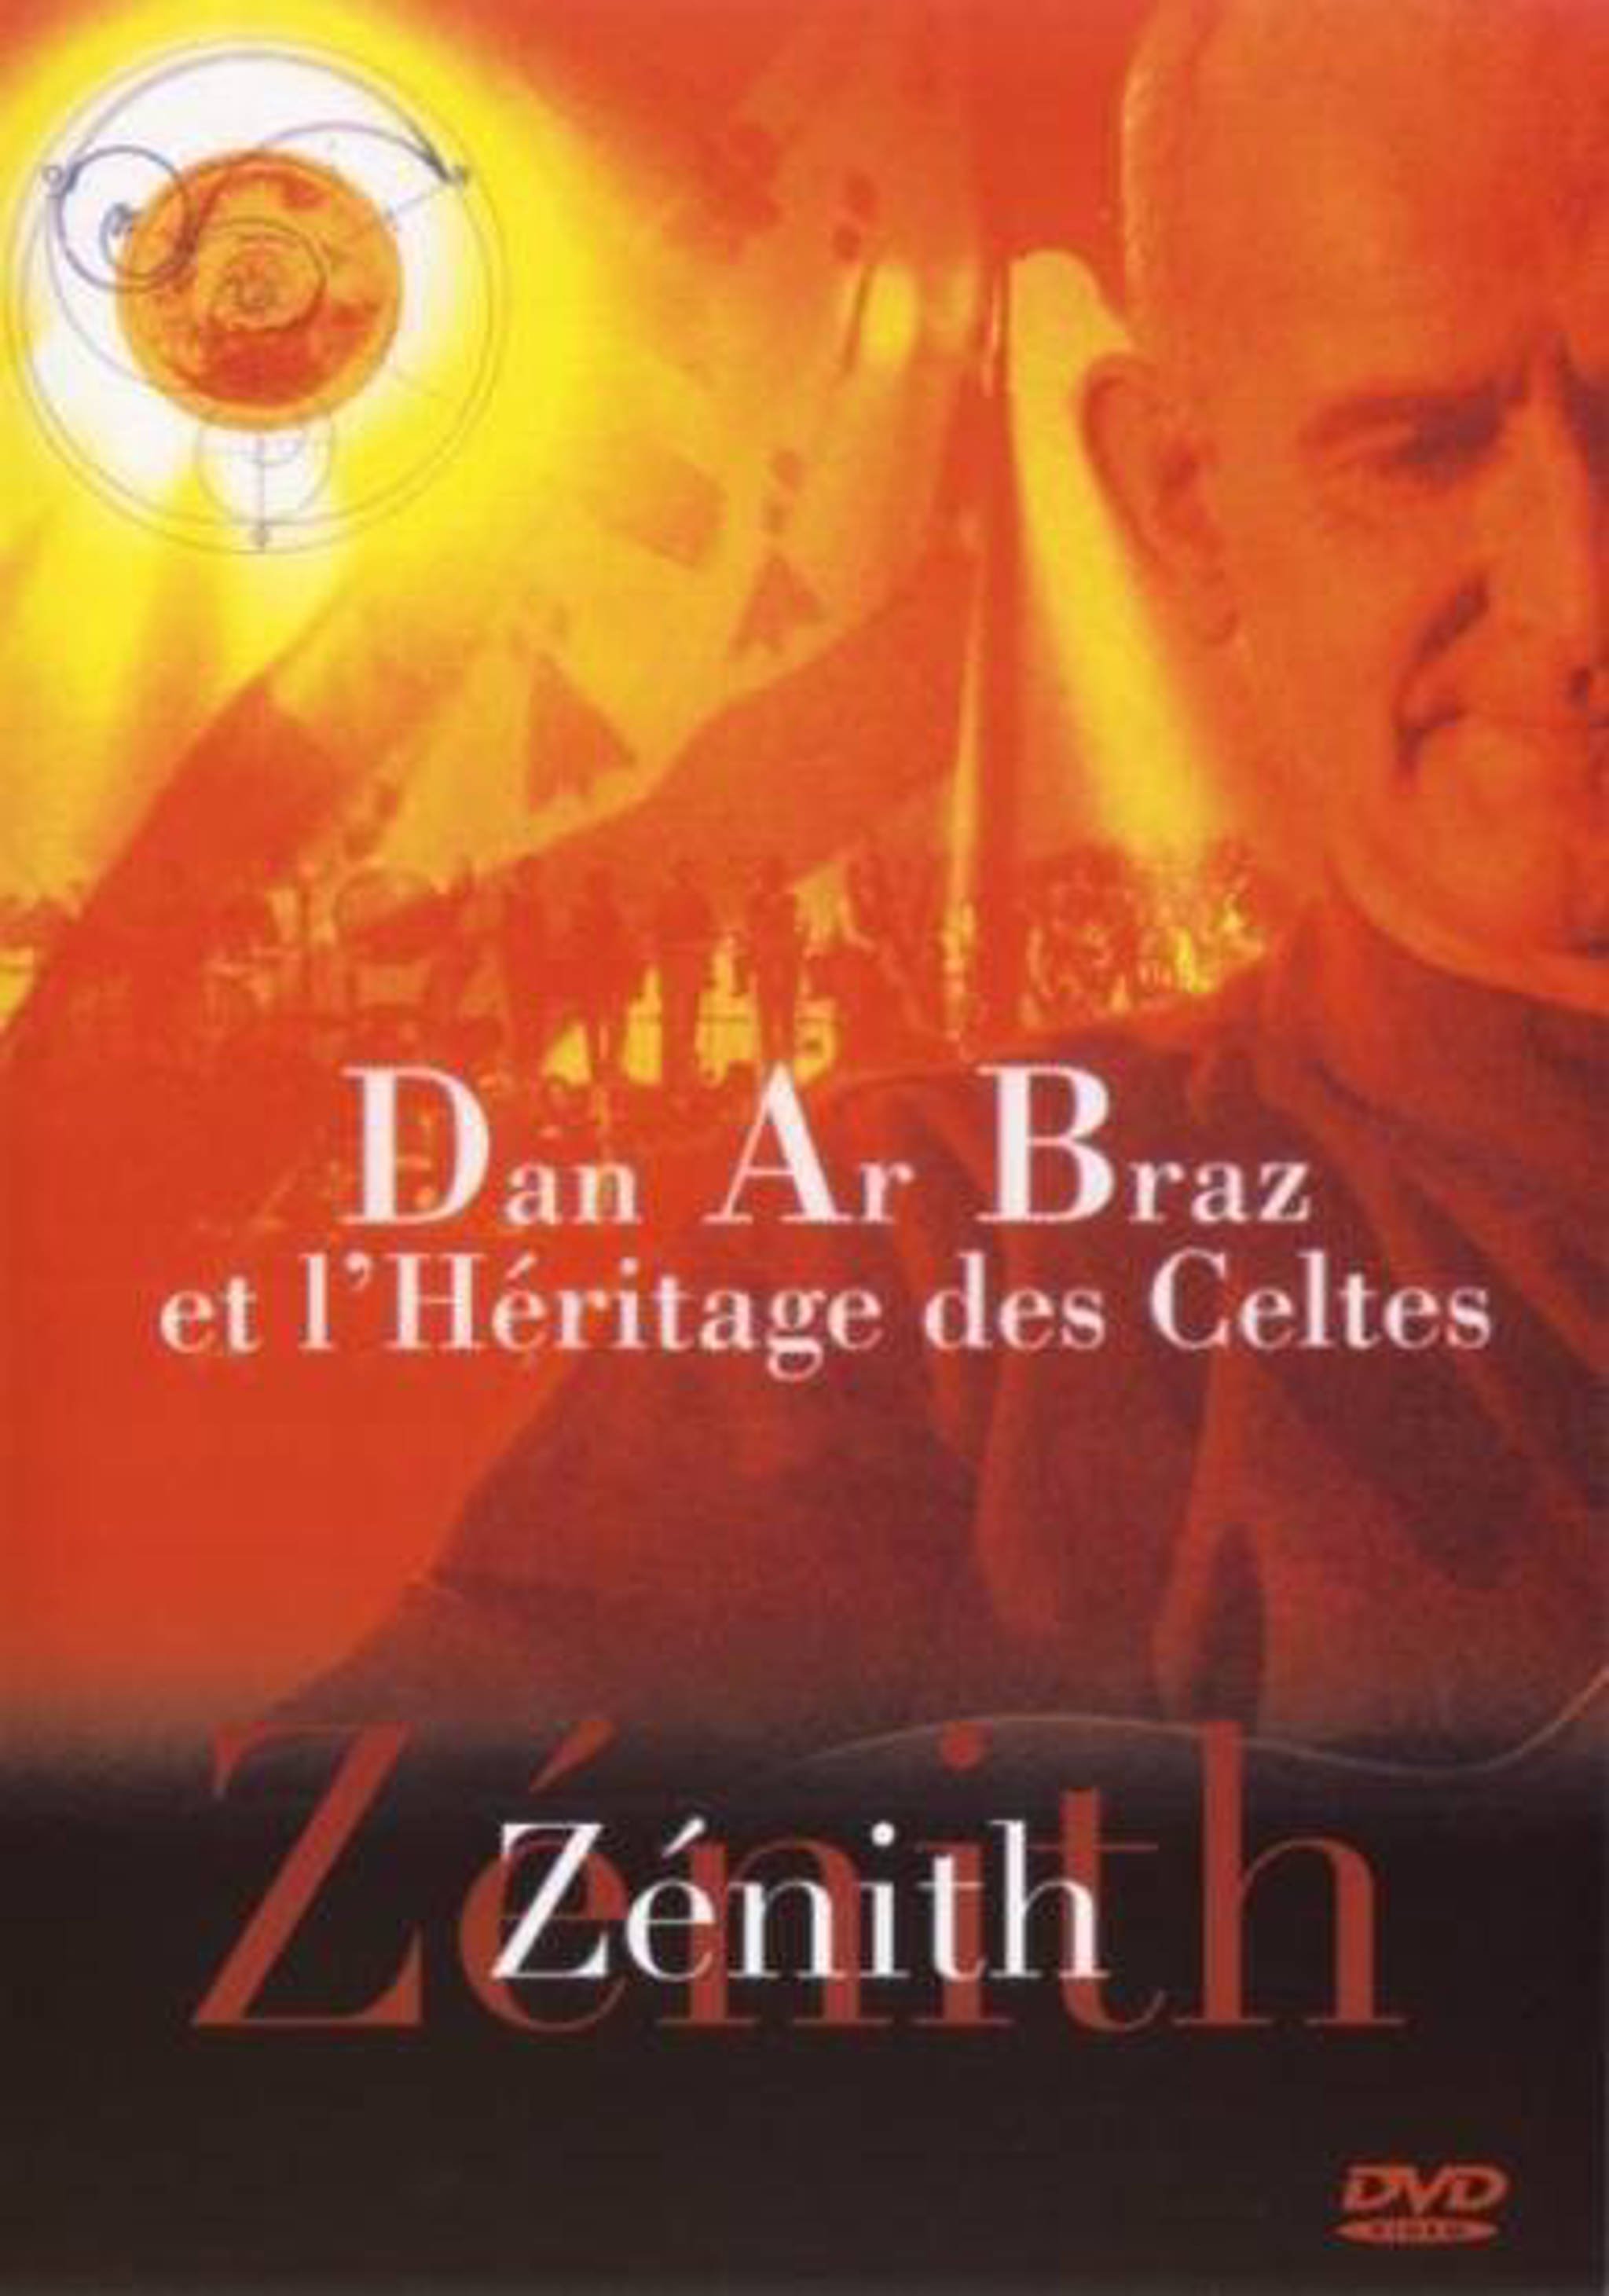 Dan Ar Braz et l'Héritage des Celtes - Zénith live 1998 DVD